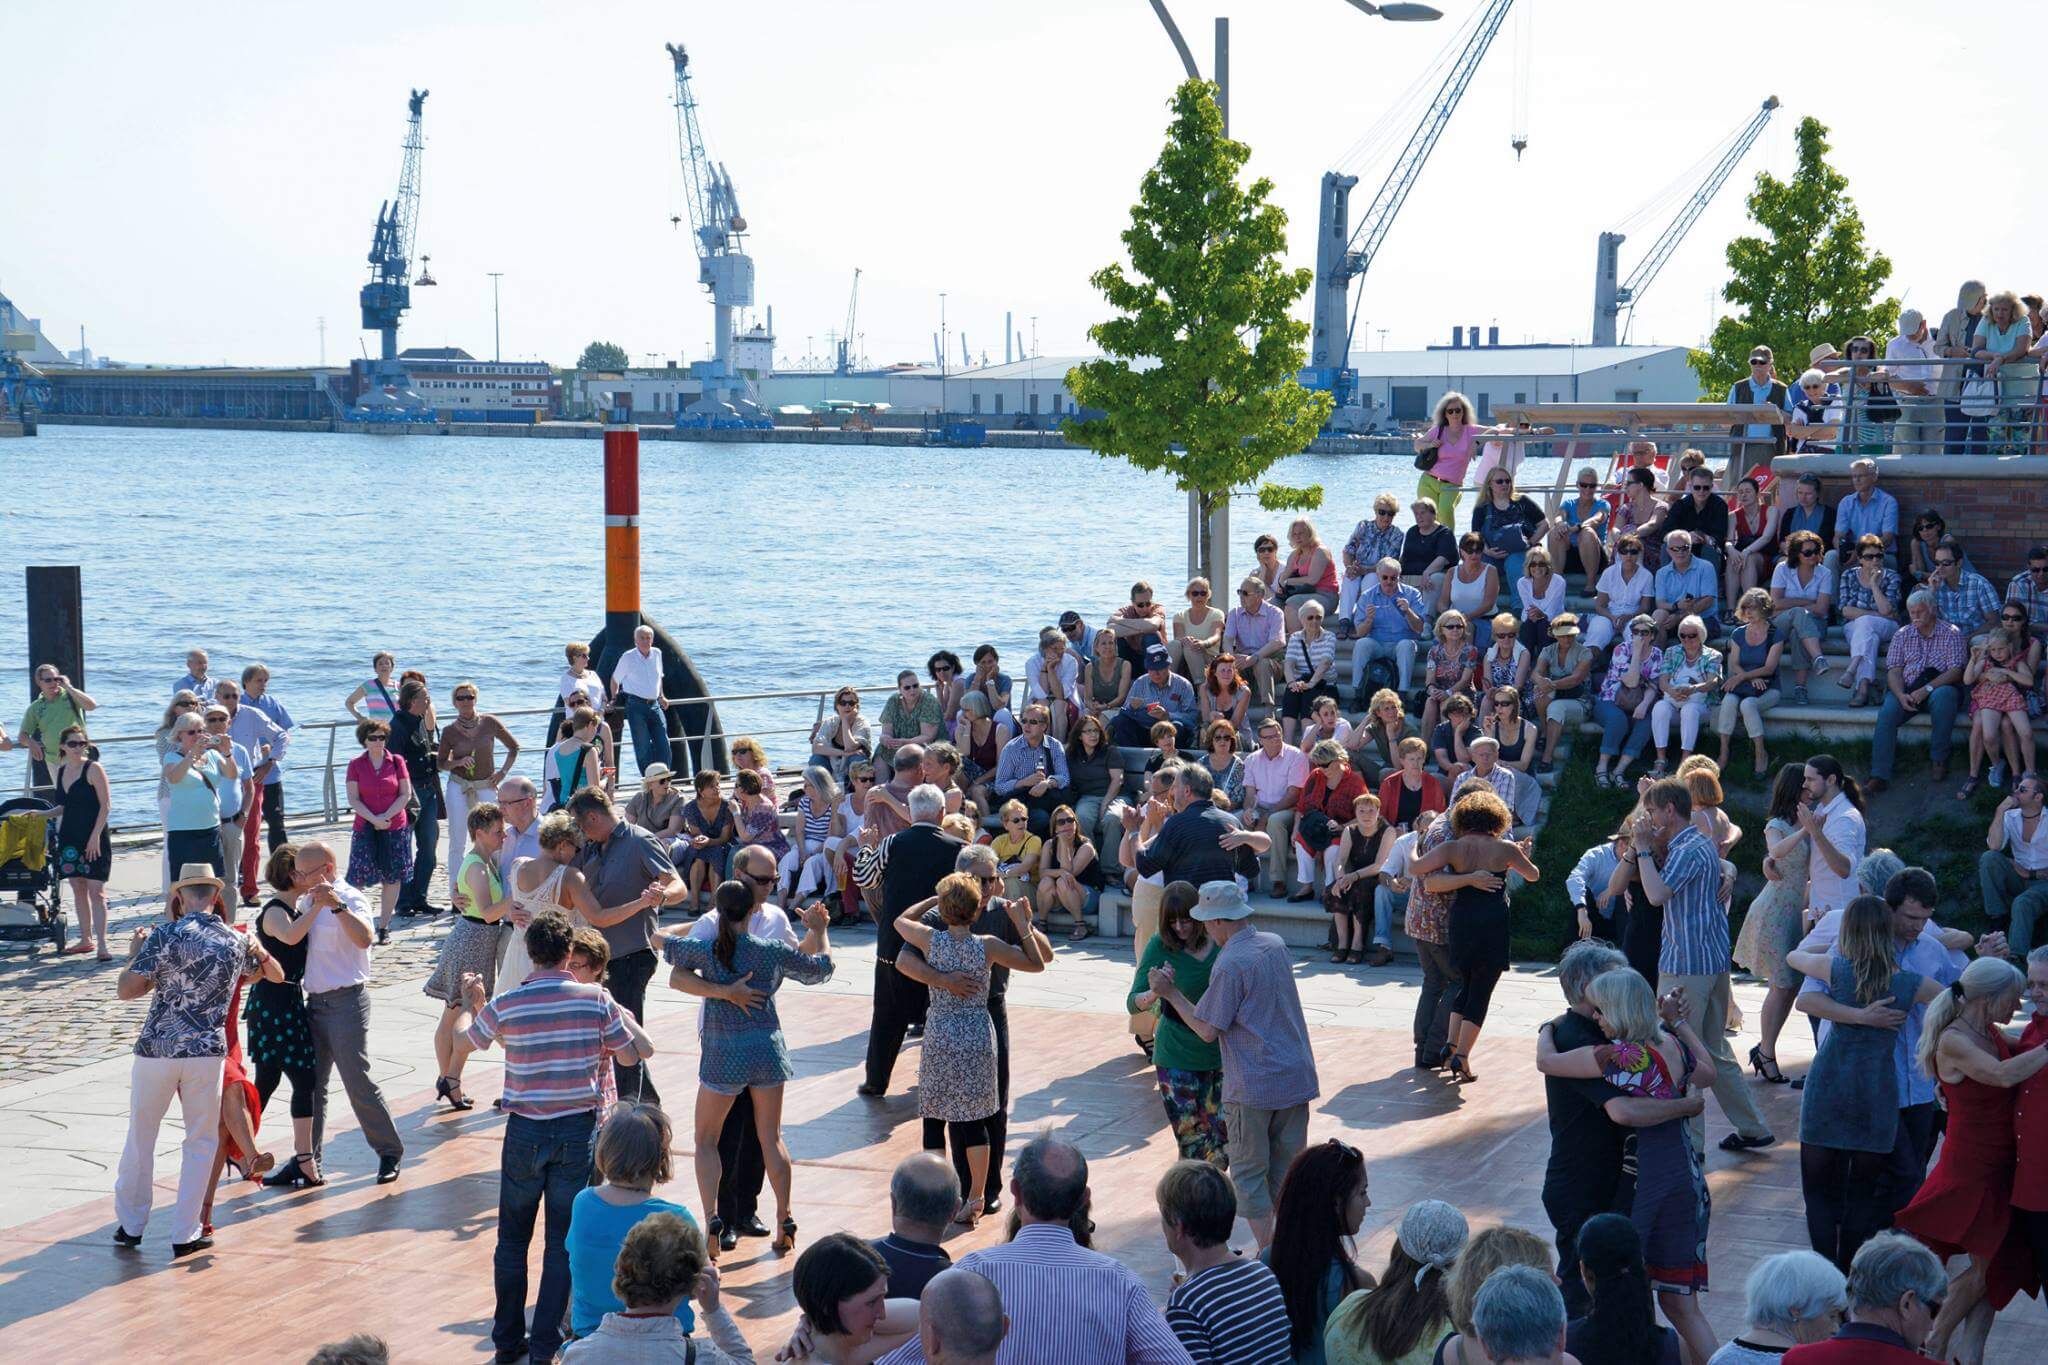 Hafenatmosphäre, Musik, Tanz & ein buntes Kulturprogramm – so sieht das Sommer Open Air in der HafenCity aus.